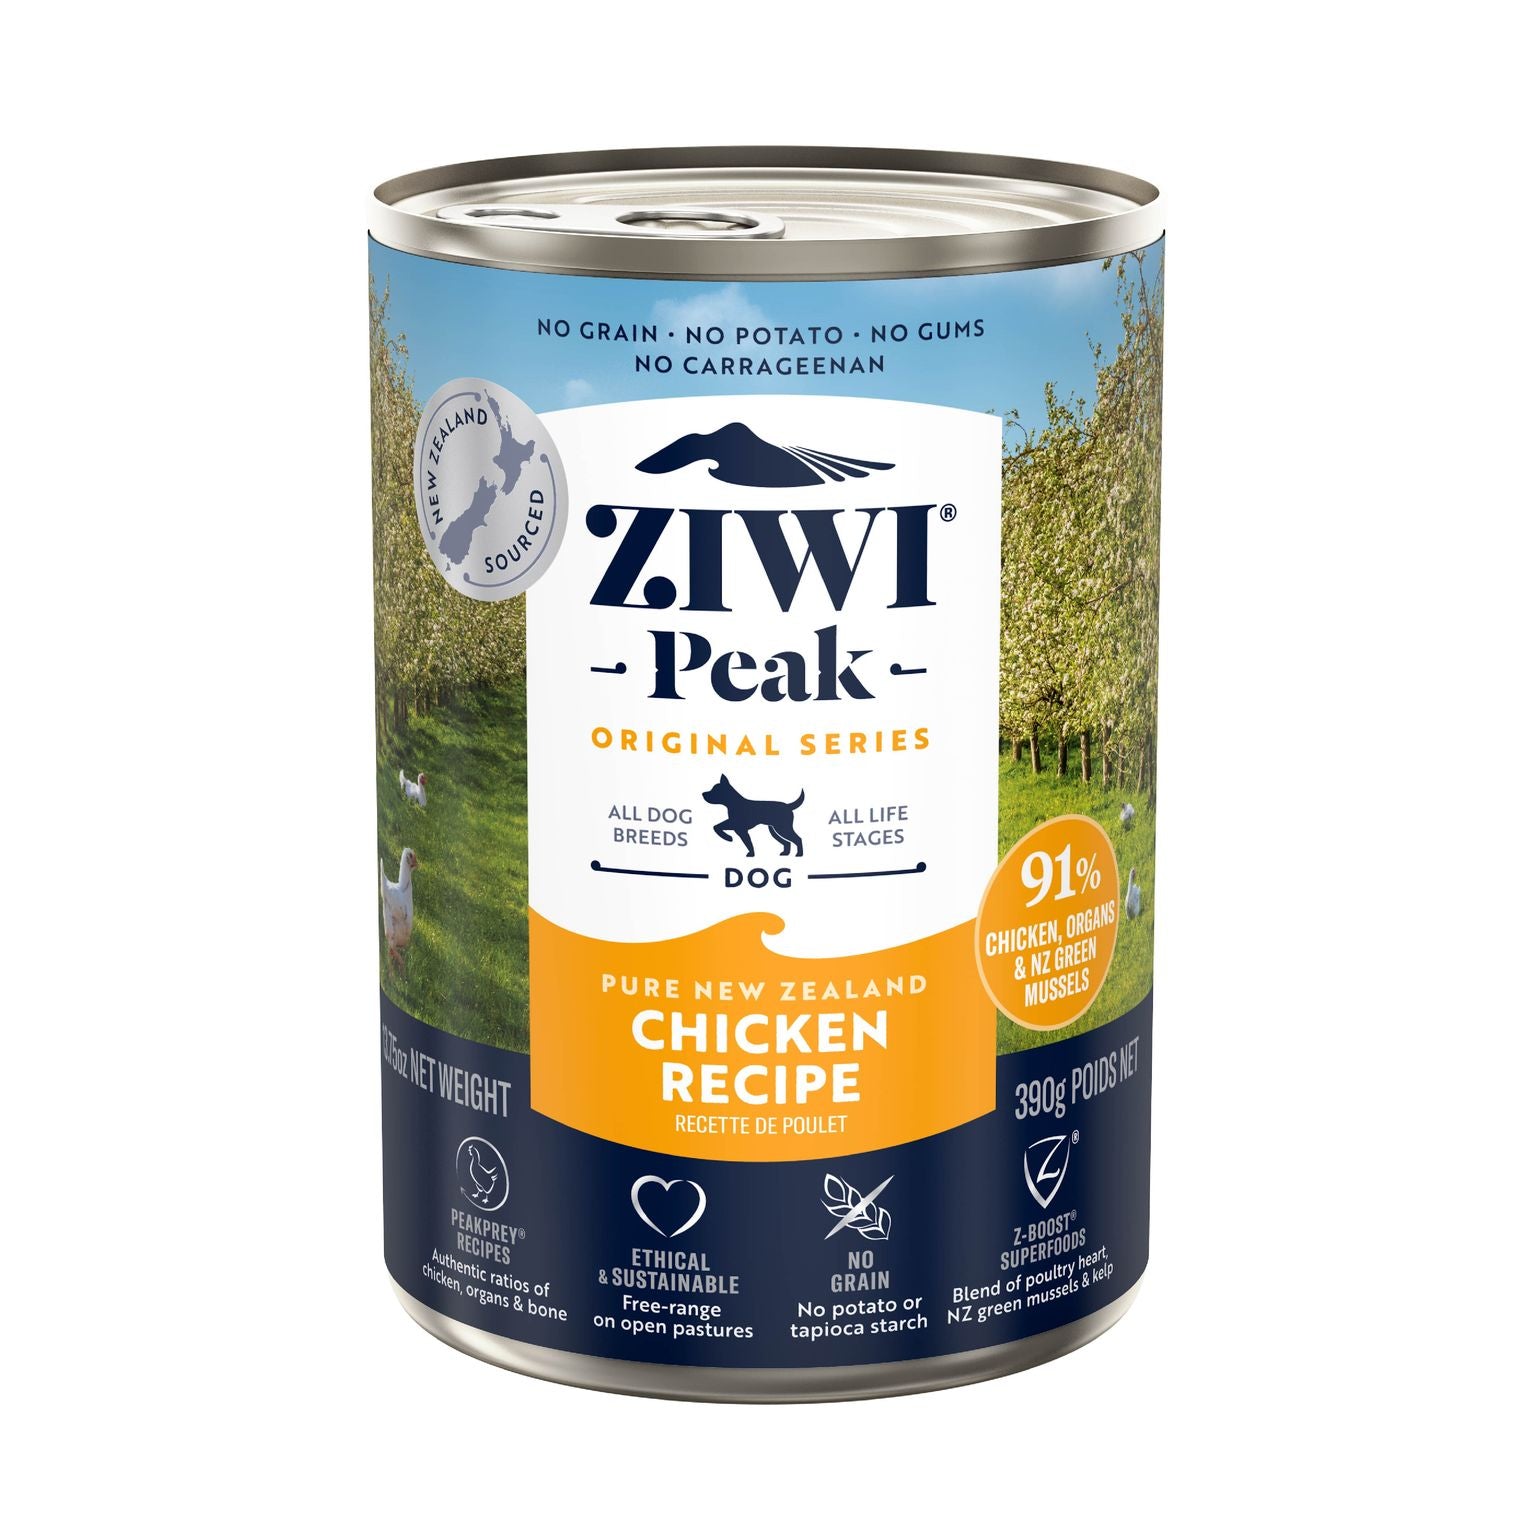 Ziwipeak Moist Food for Dogs